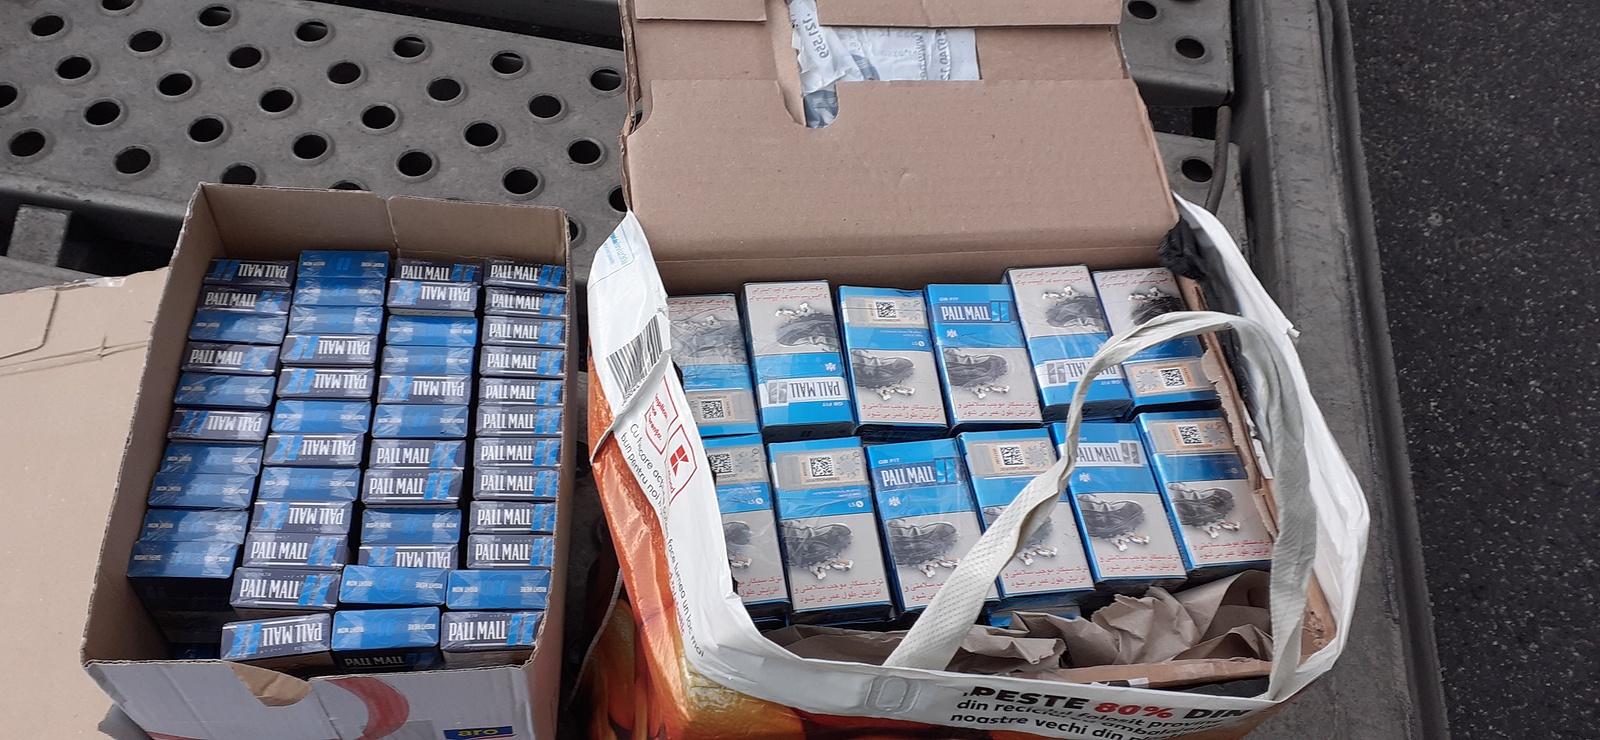 Celníci na dálnici u Lovosic zabavili přes 15 tisíc pašovaných cigaret -  Litoměřický deník